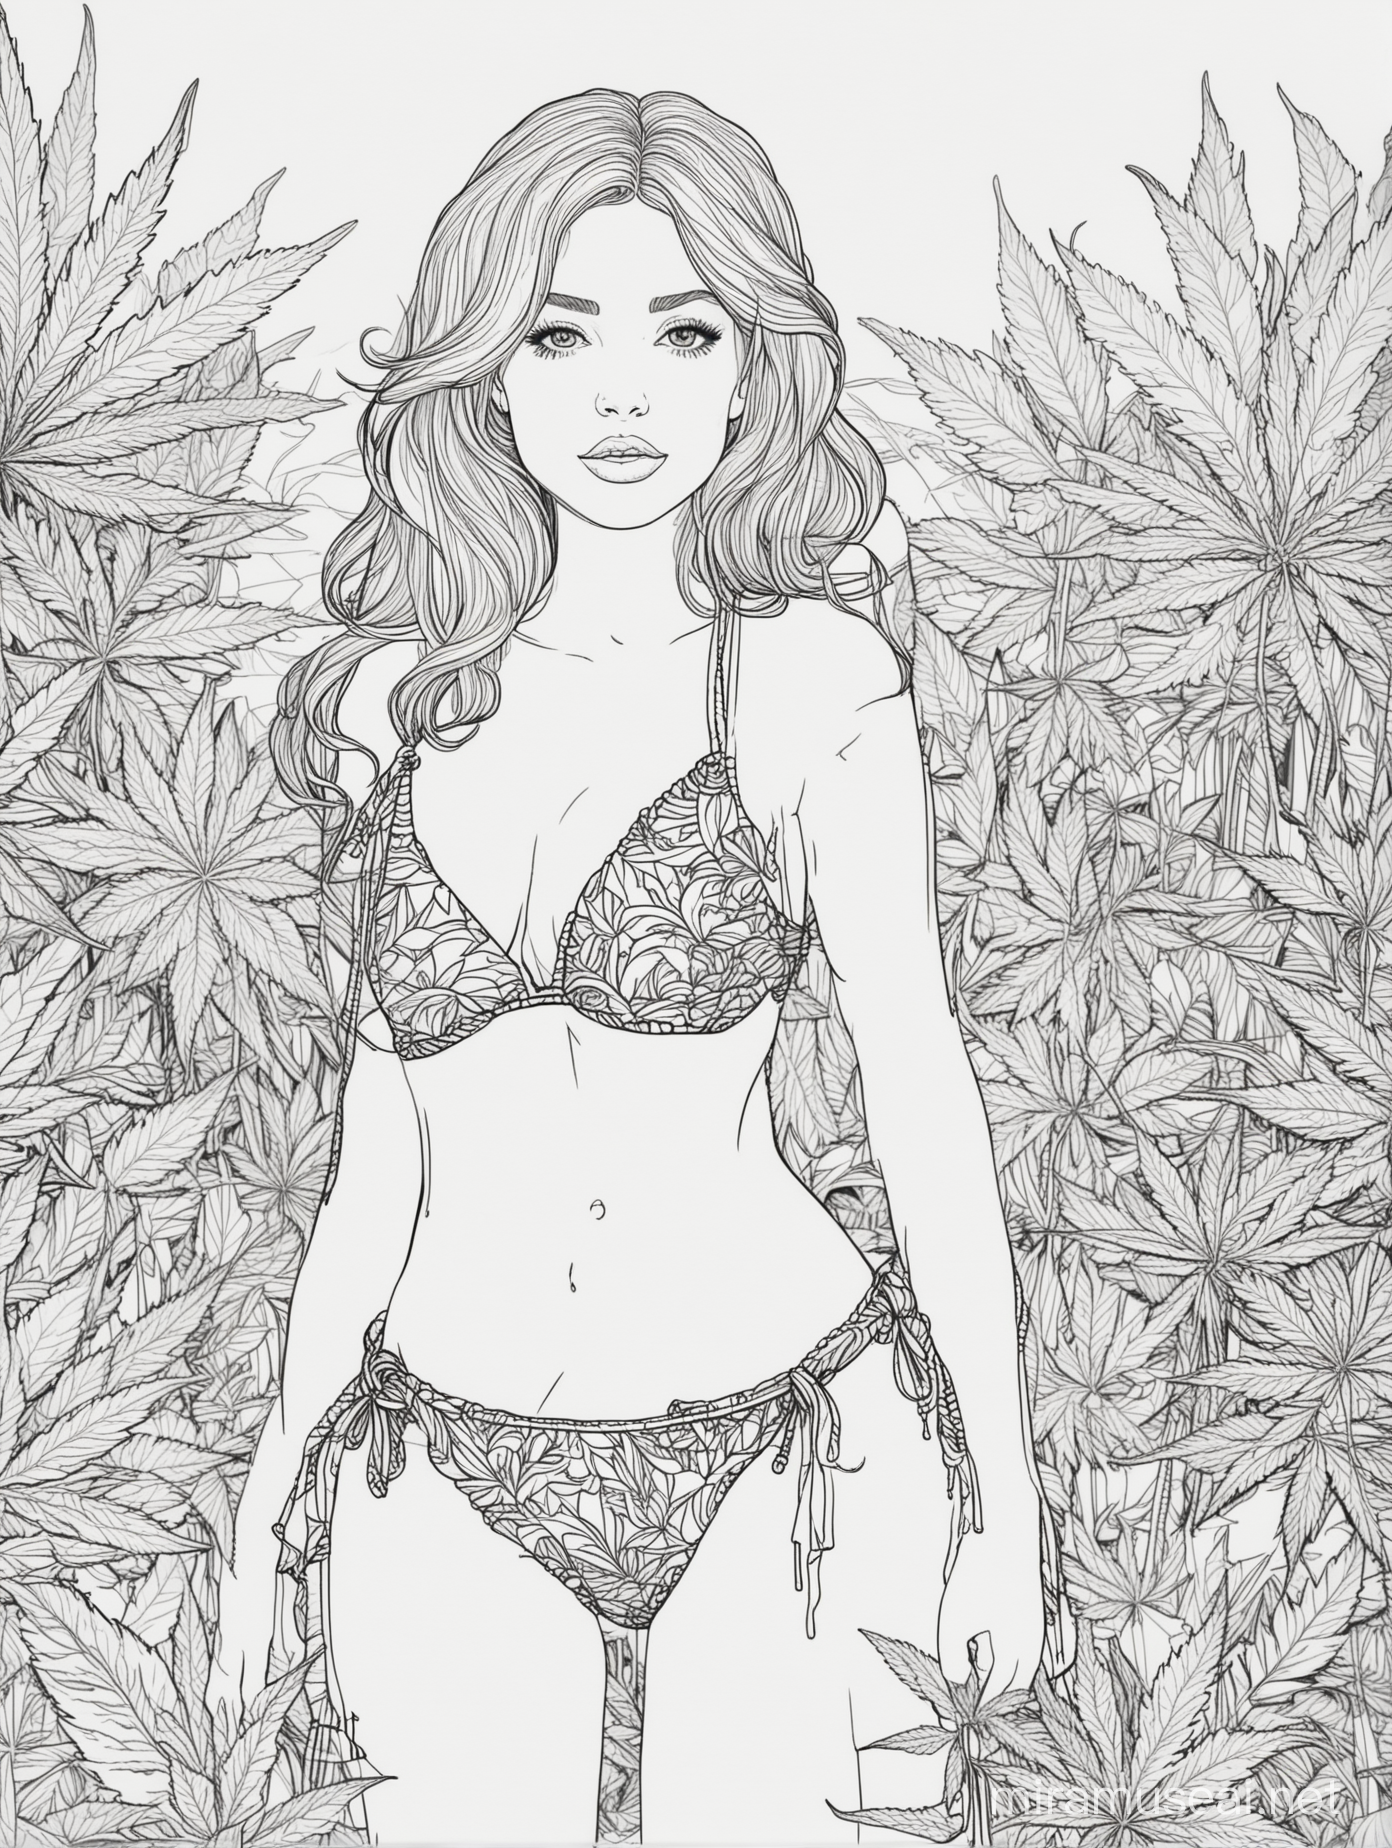 Sensual Bikini Girl Coloring Page with Cannabis Theme